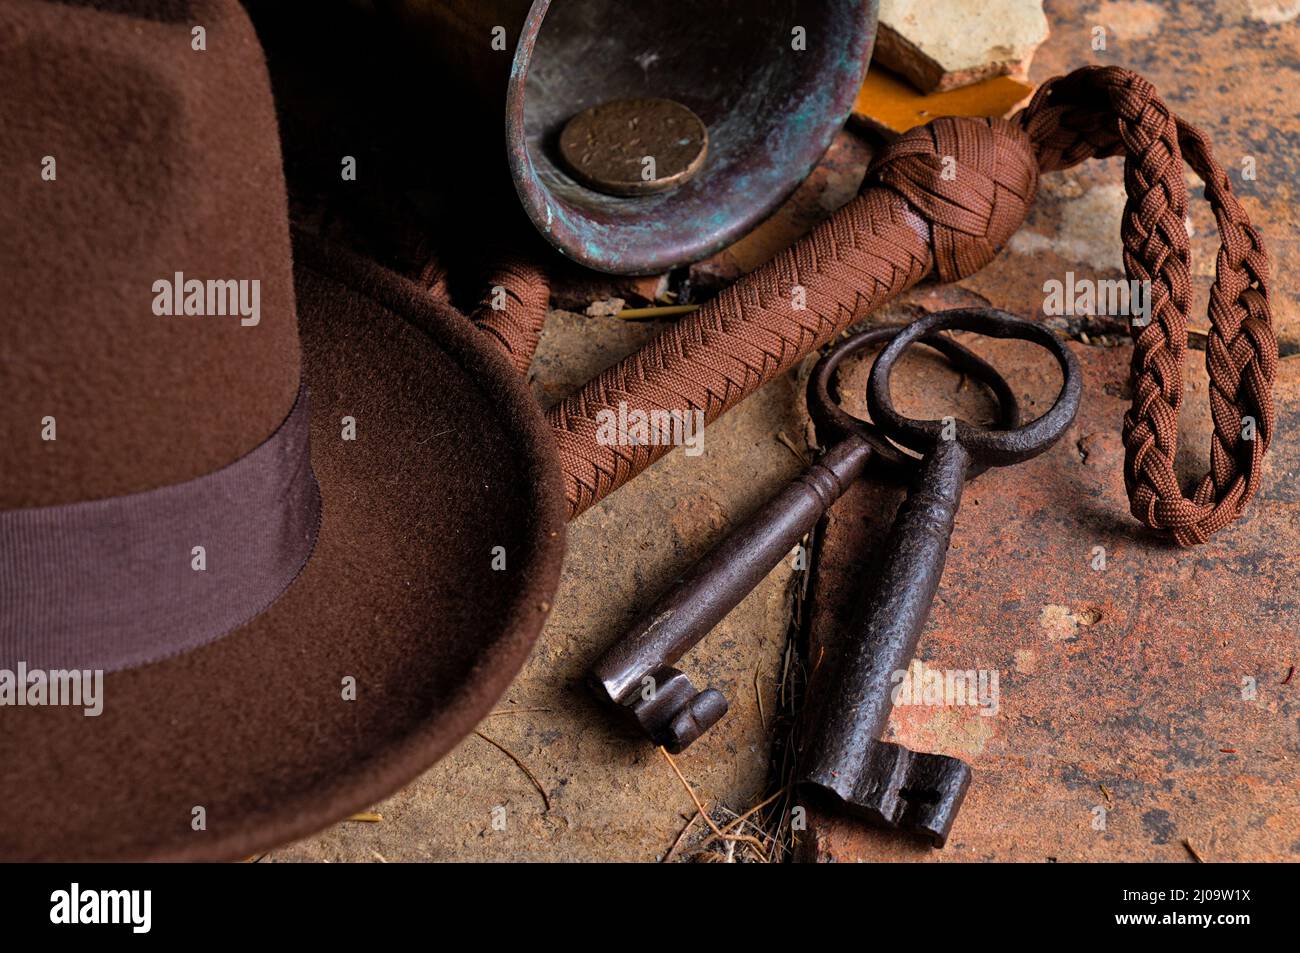 Abenteurer-Szene mit Objekten, die von Indiana Jones Films inspiriert wurden Stockfoto